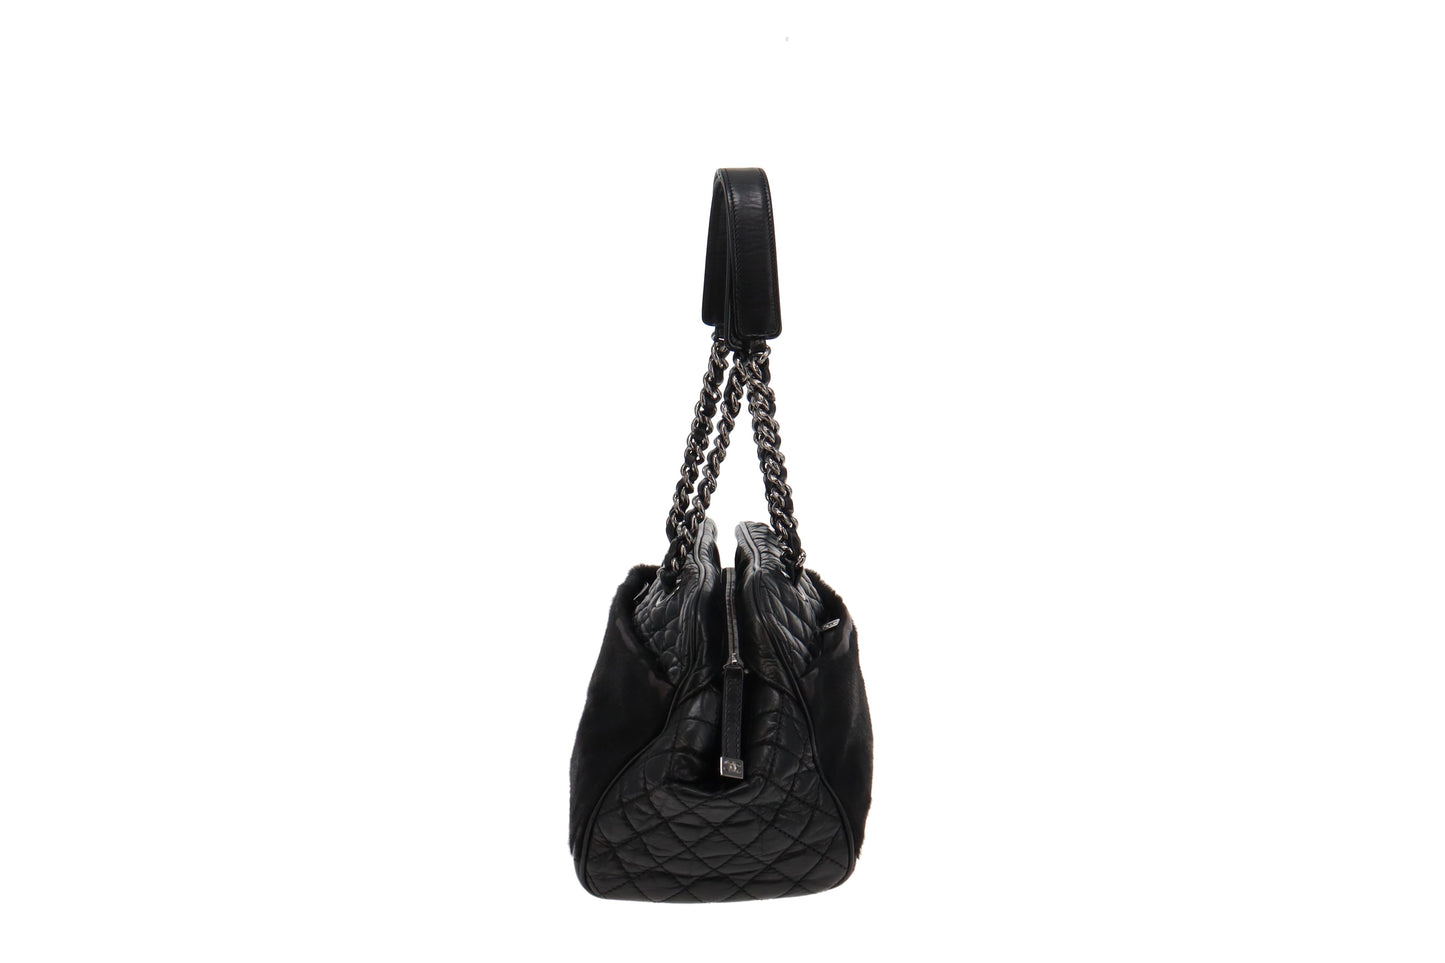 Chanel Vintage Matelasse Lambskin Leather Shoulder Bag 2005/06